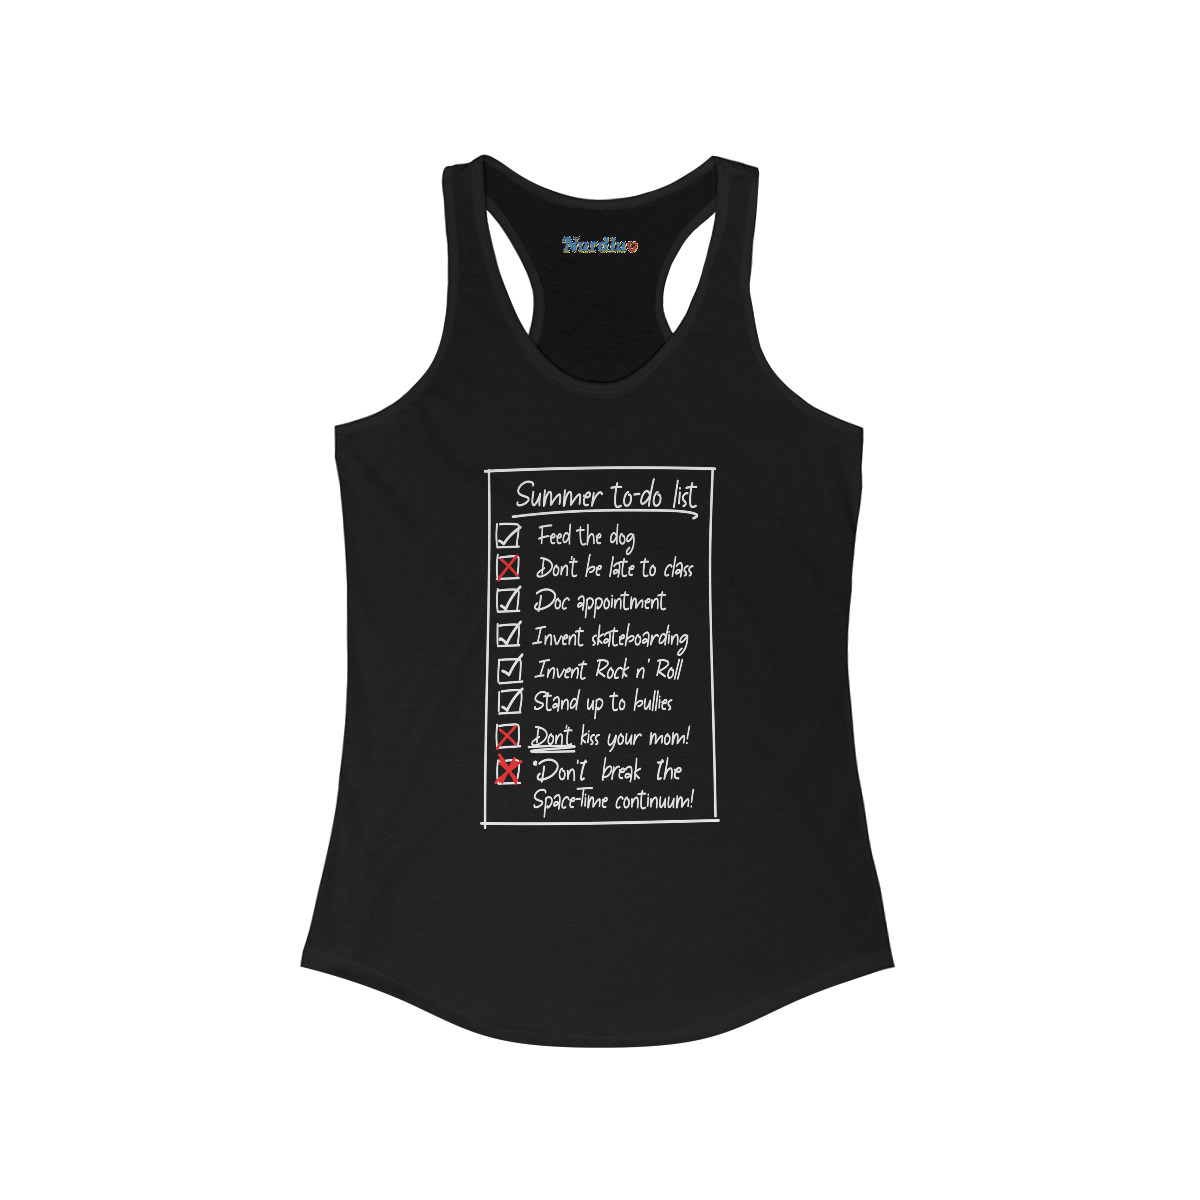 Summer List (dark shirts) - Women's Ideal Racerback Tank